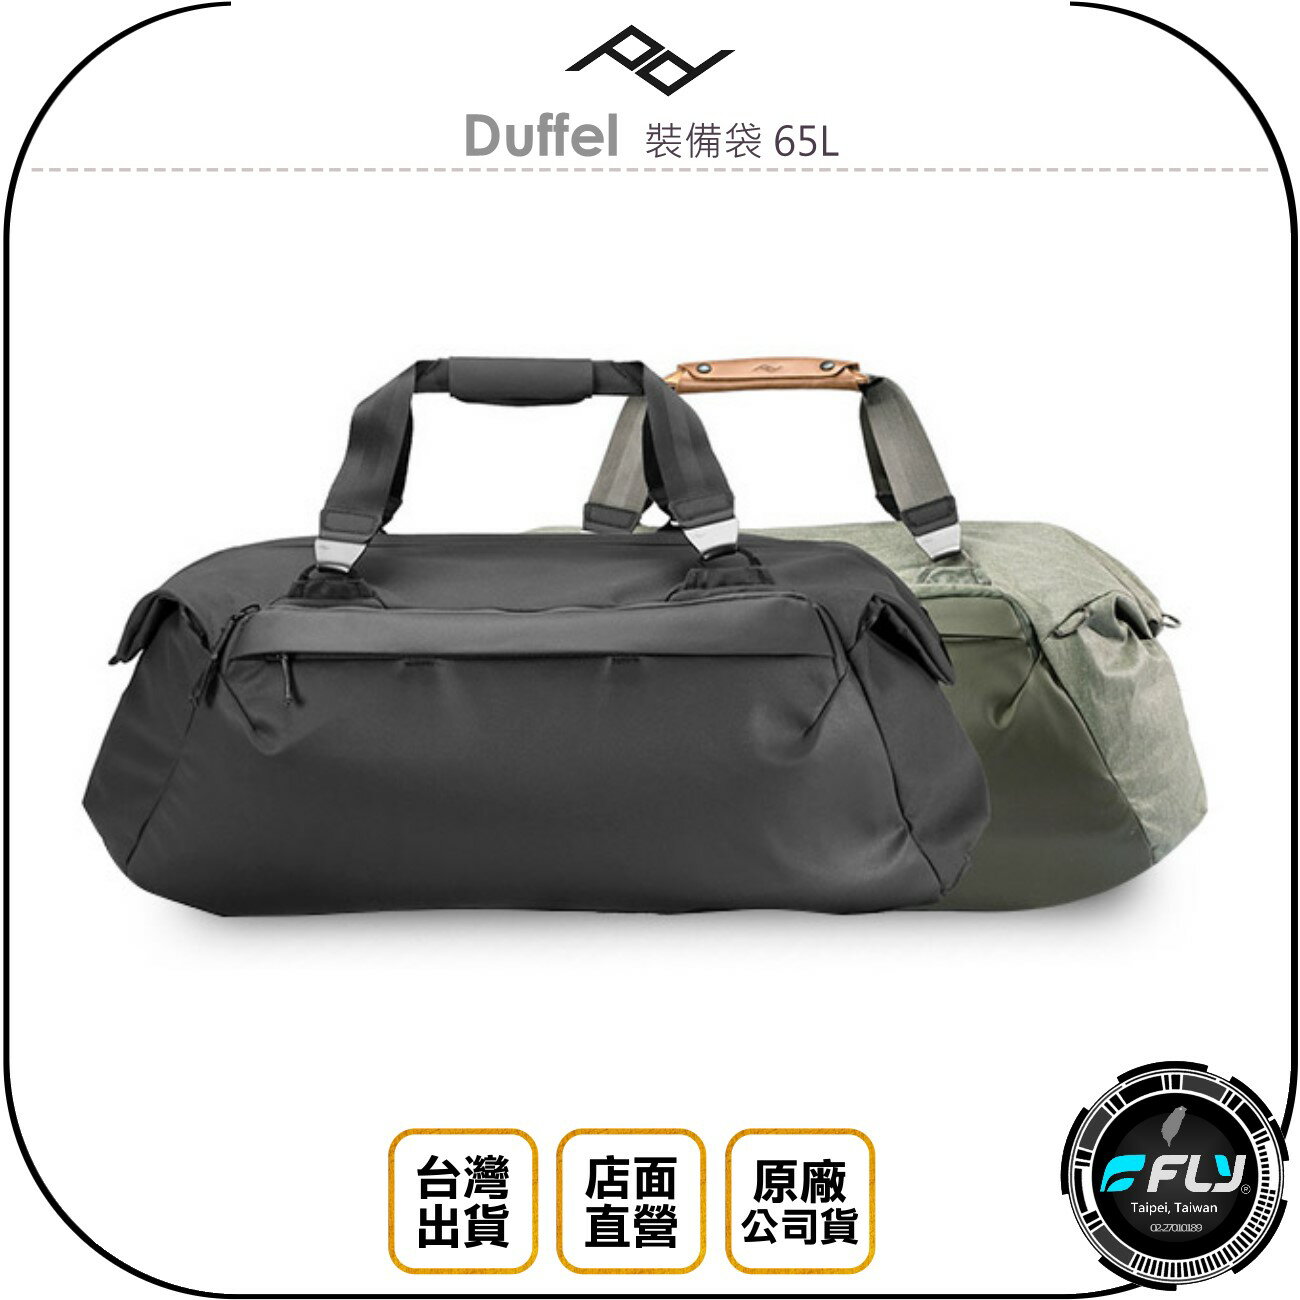 《飛翔無線3C》PEAK DESIGN Duffel 裝備袋 65L◉公司貨◉側背超大旅遊袋◉出遊整理收納包